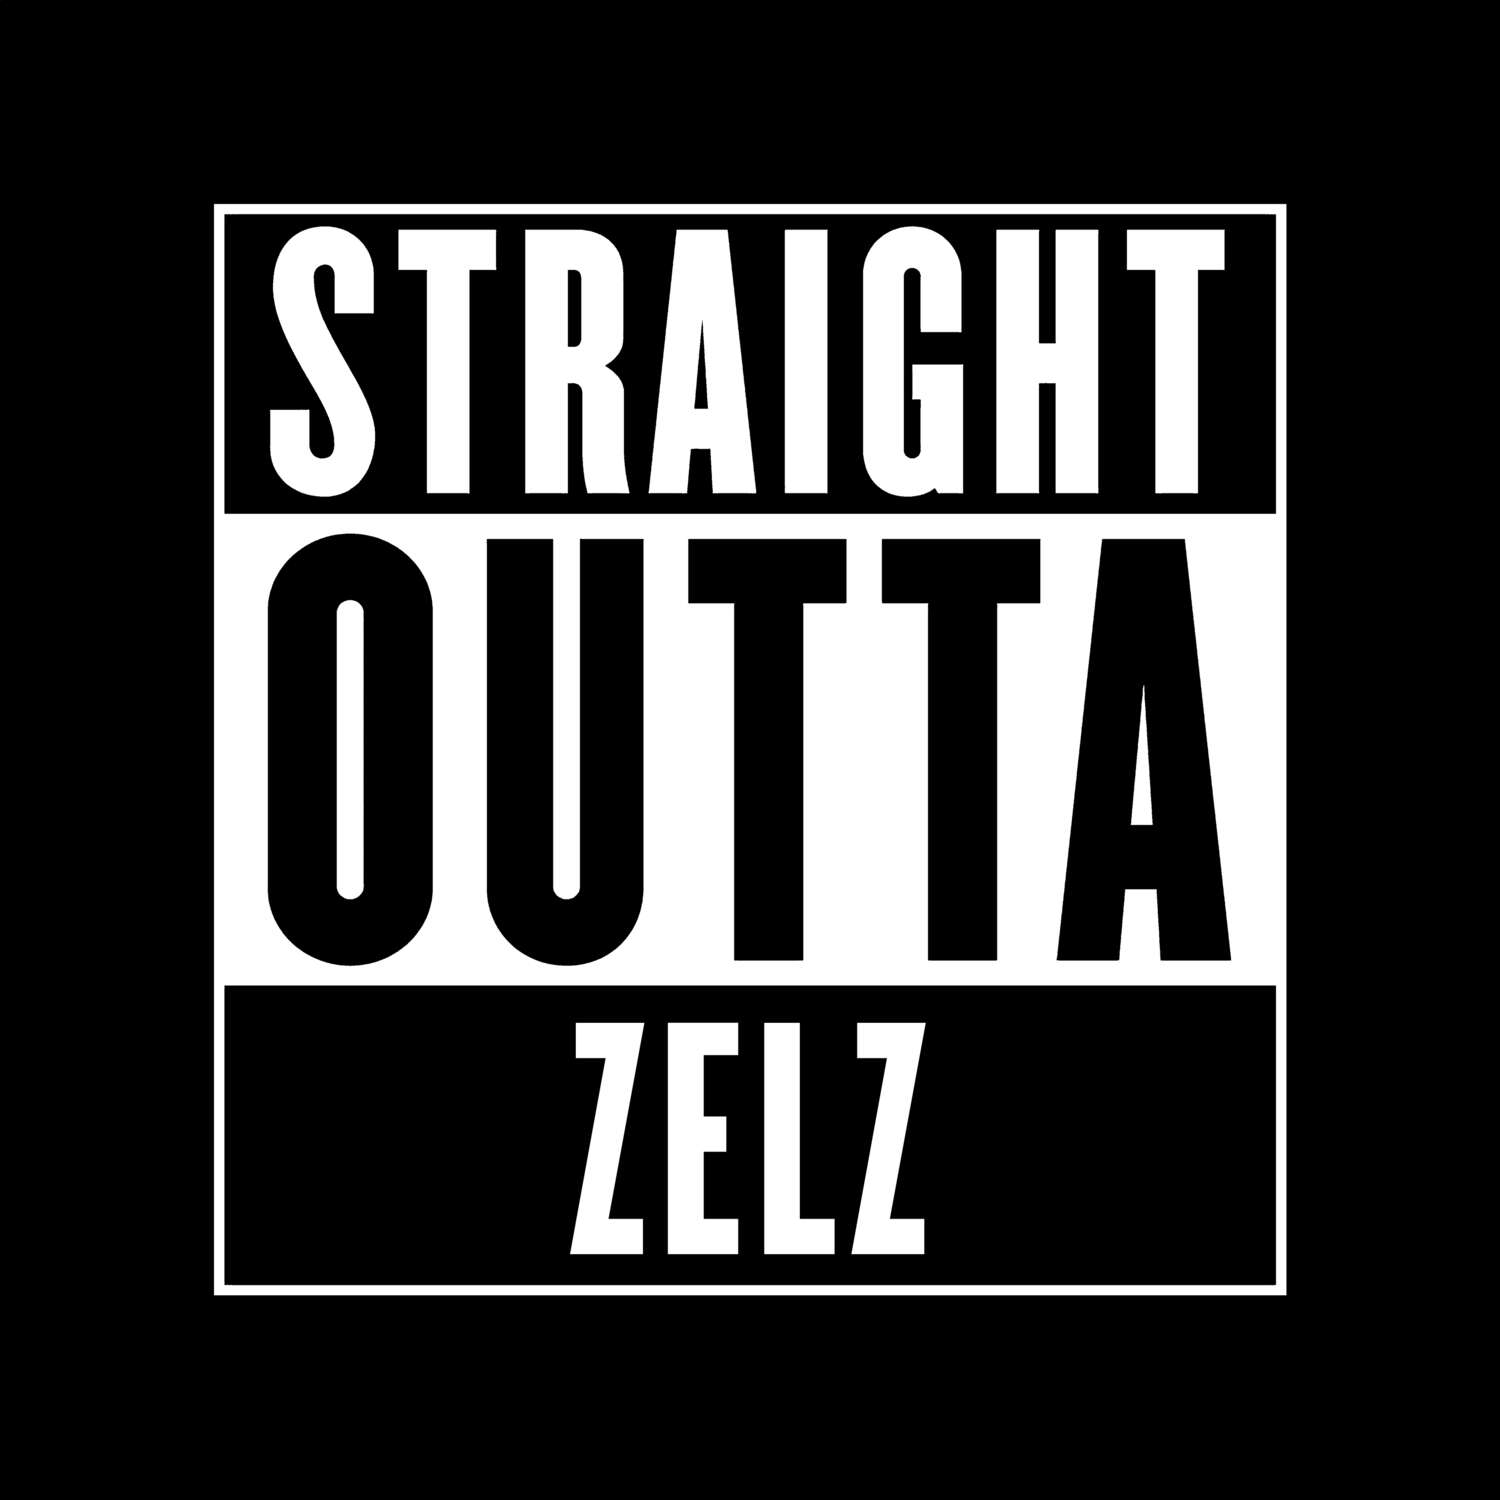 Zelz T-Shirt »Straight Outta«